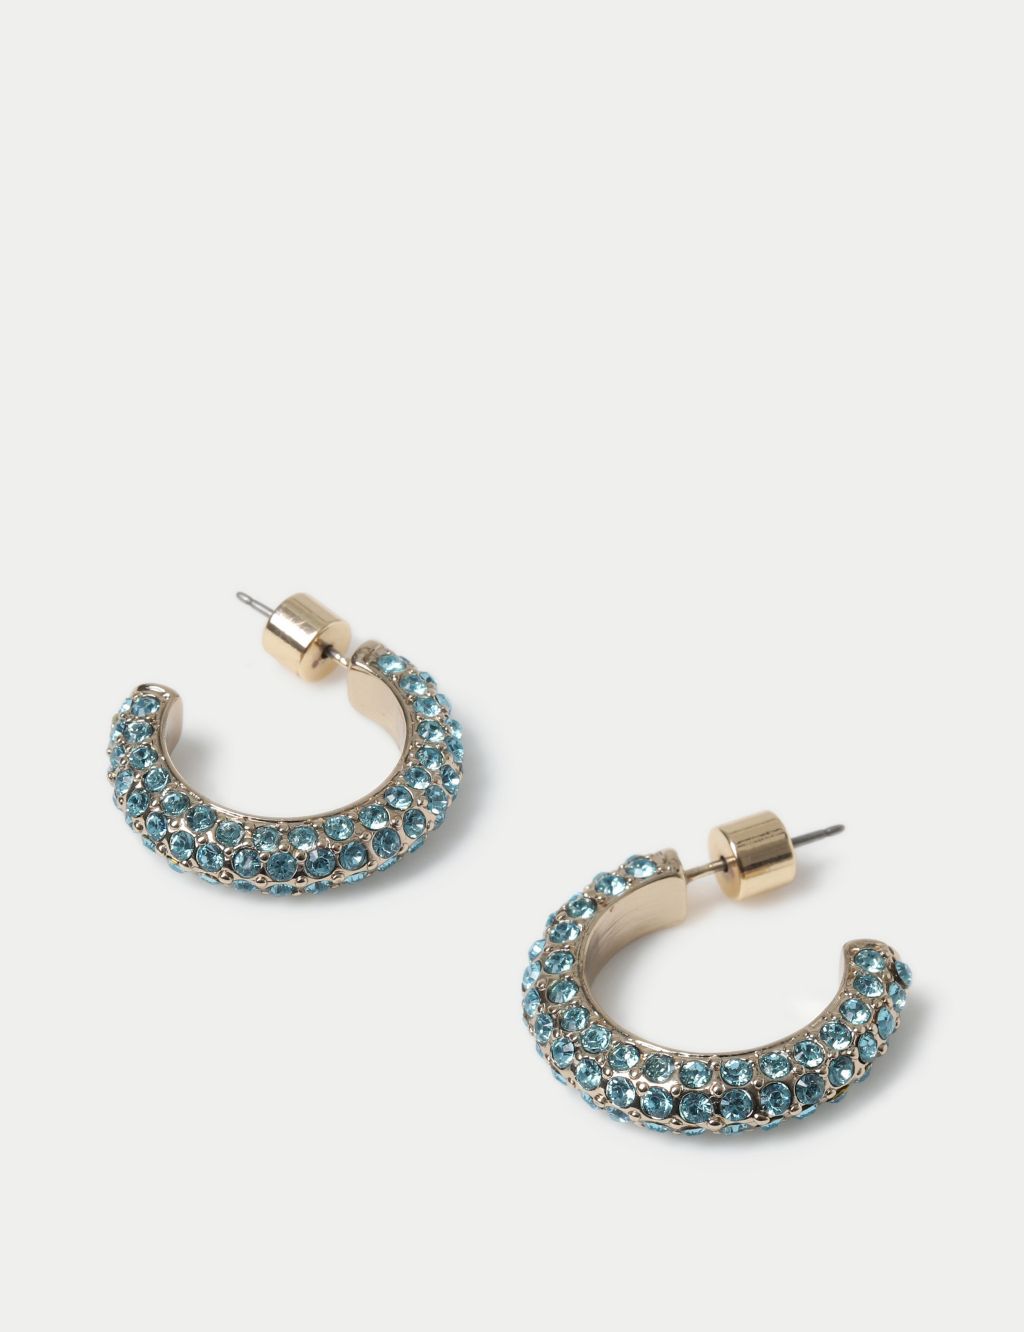 Blue Rhinestone Pave Hoop Earrings 2 of 2